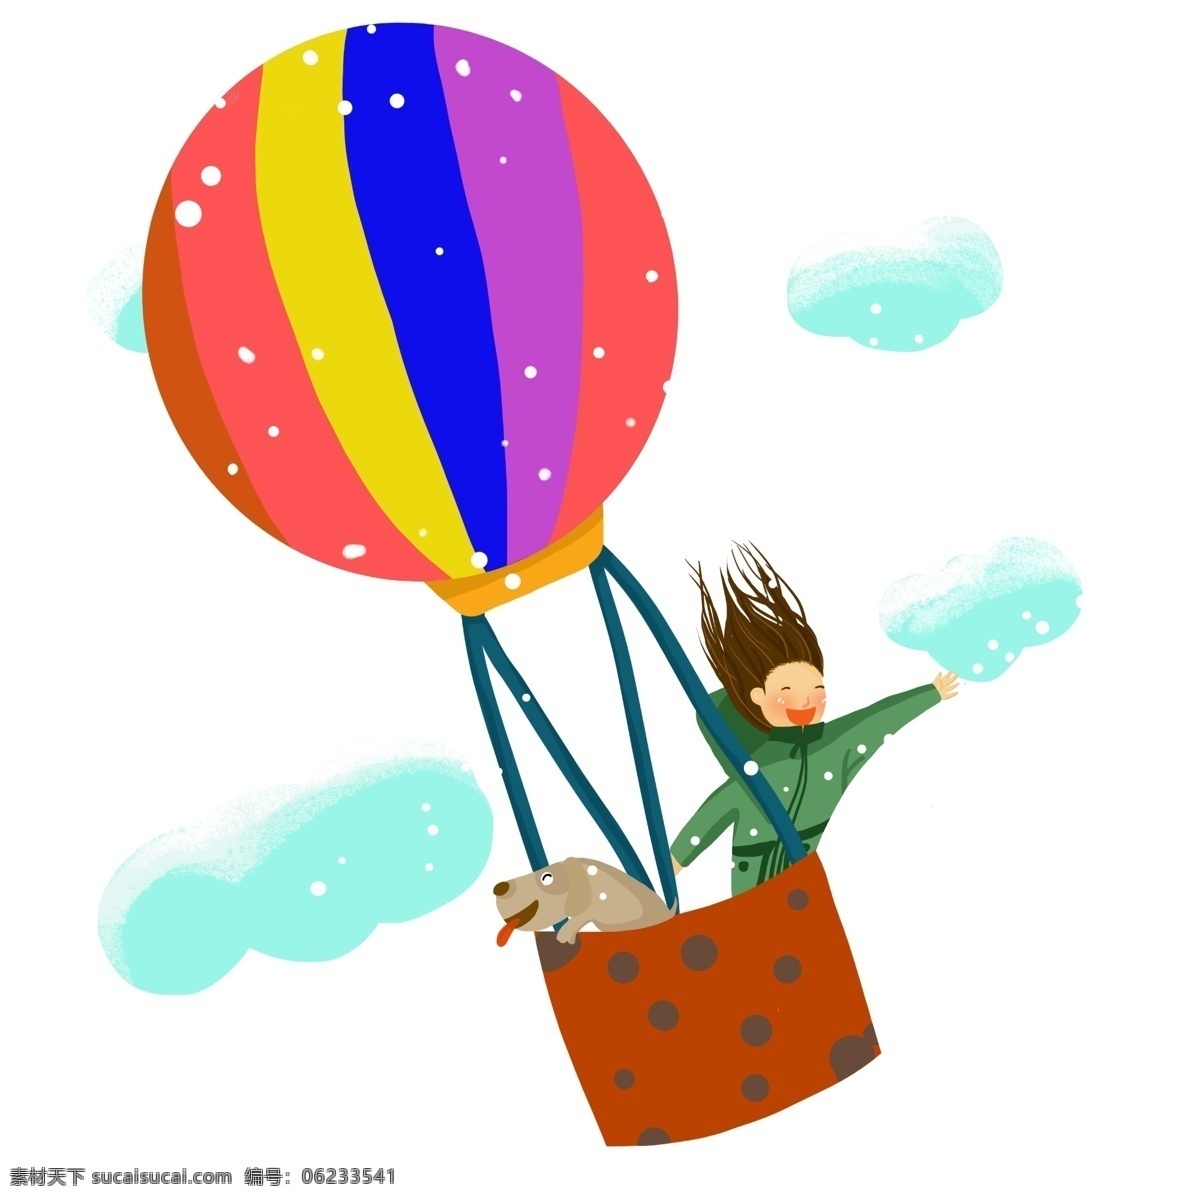 冬季 旅行 热气球 插画 蓝色的云朵 卡通插画 开心的孩子 可爱的狗狗 五彩的热气球 手绘旅行插画